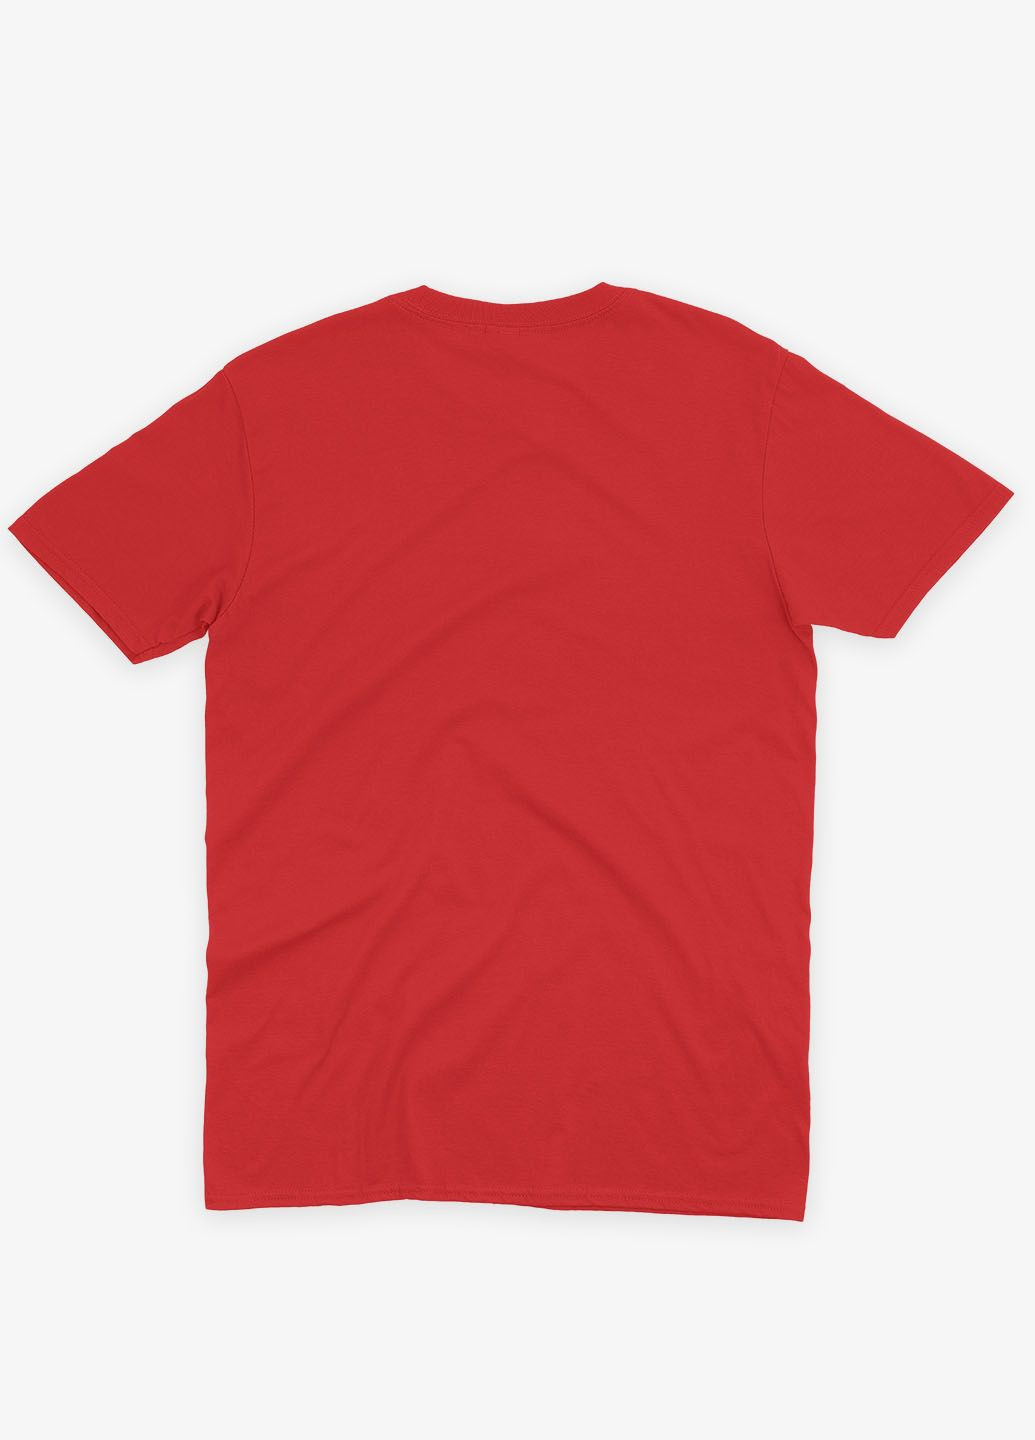 Красная демисезонная футболка для девочки с патриотическим принтом добрый вечер (ts001-2-sre-005-1-047-g) Modno